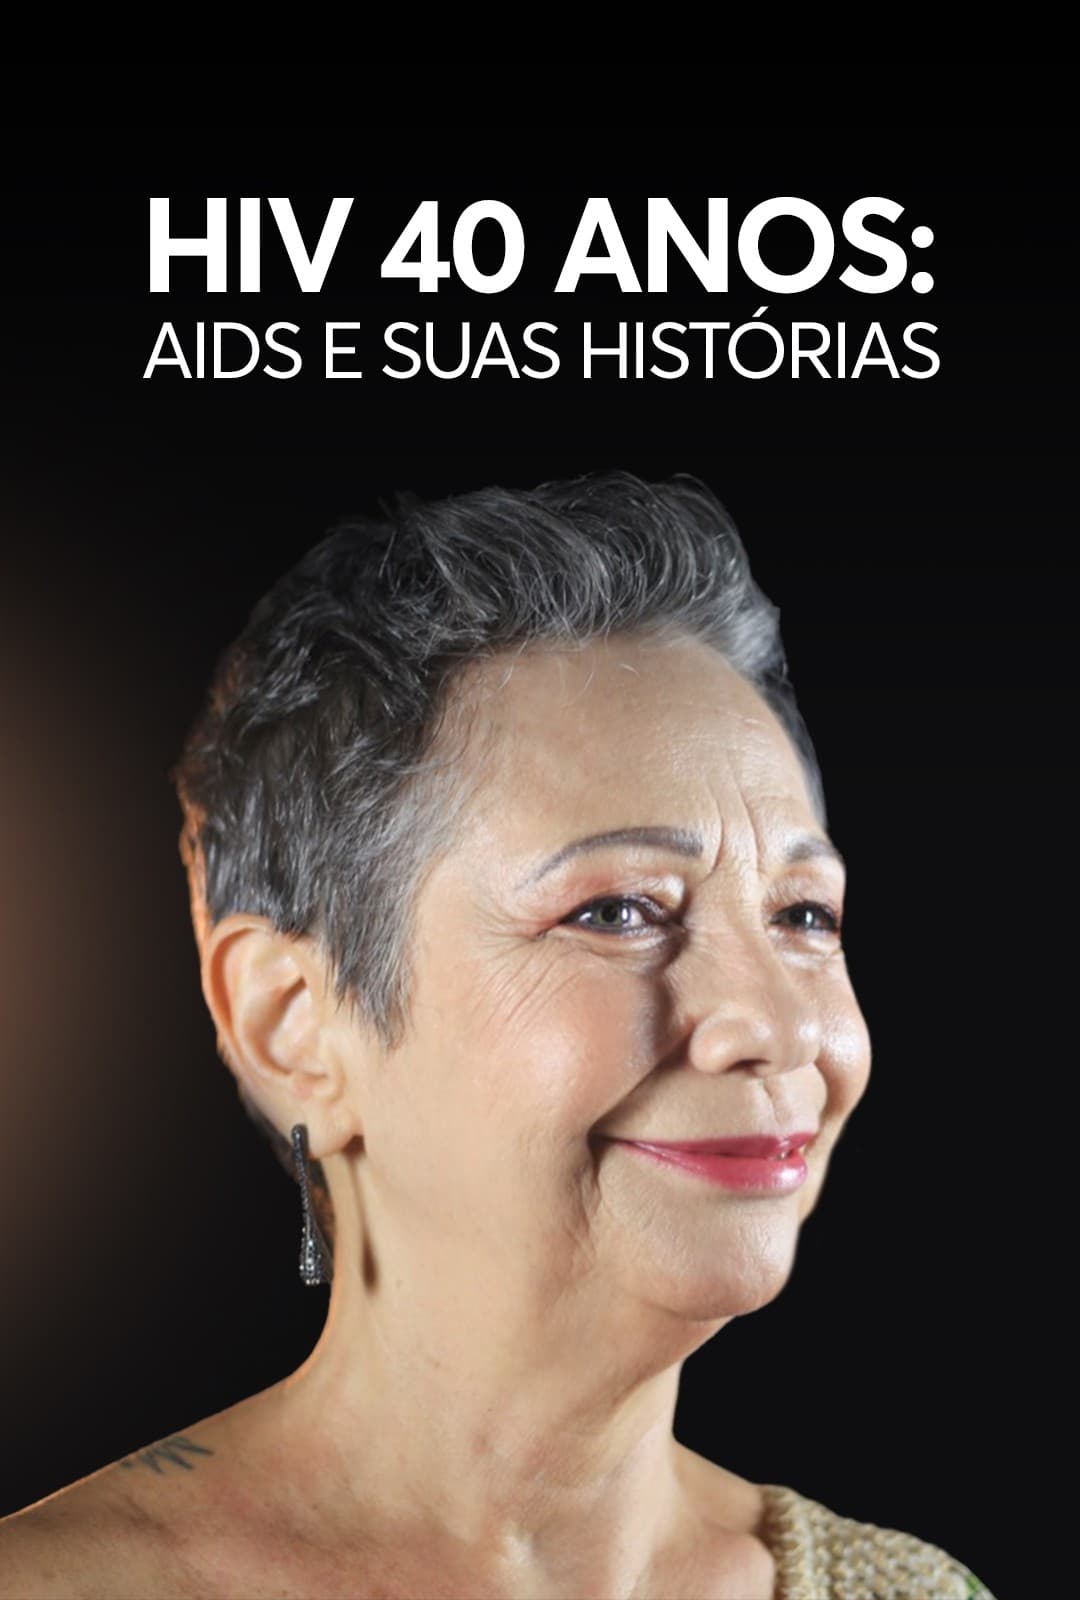 HIV 40 anos: AIDS e Suas Histórias